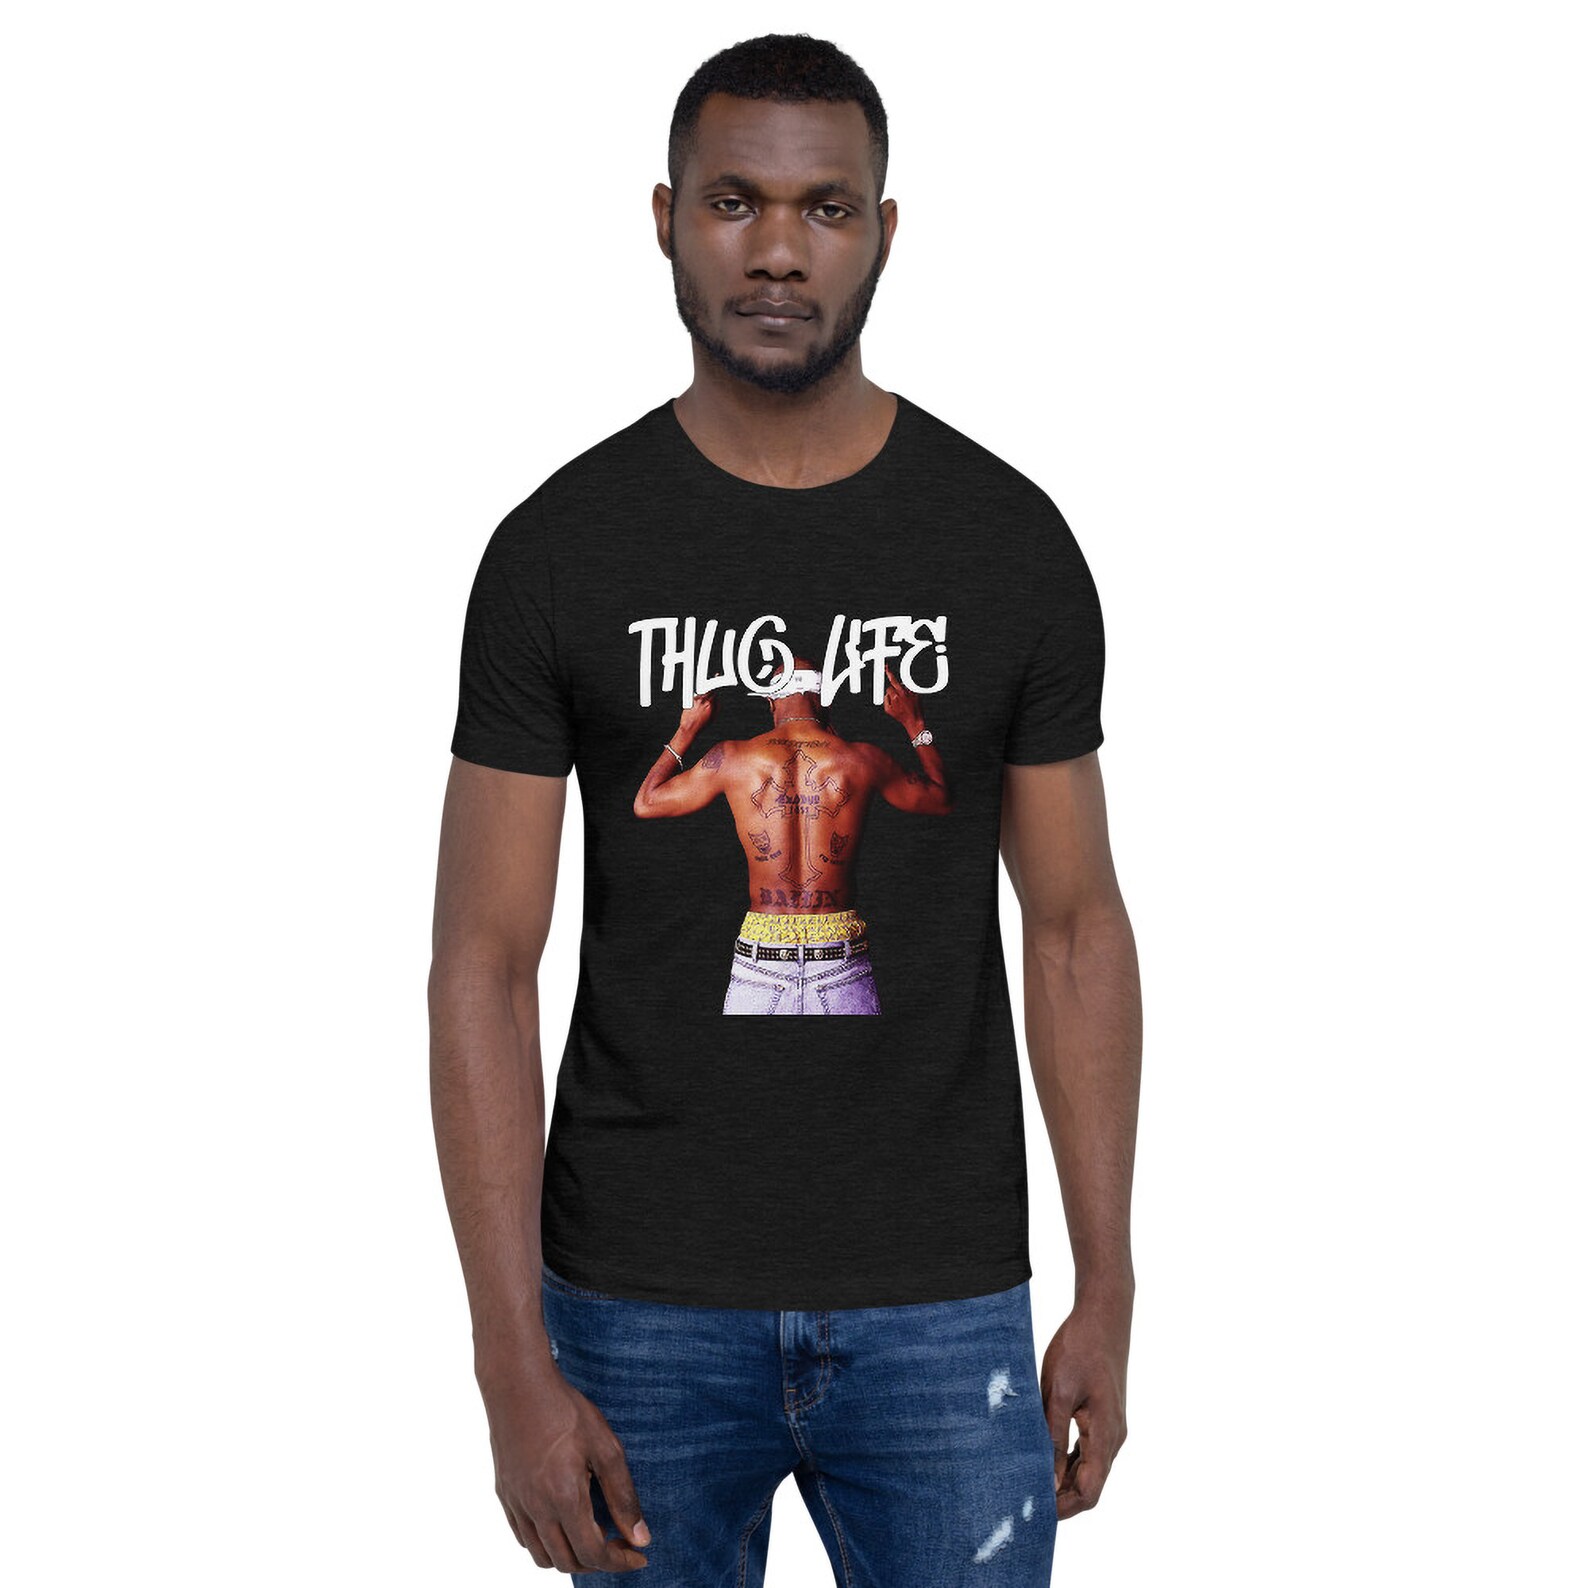 Tupac Thug Life Tee 2pac Shirt Tupac Shakur Printed Unisex - Etsy New ...